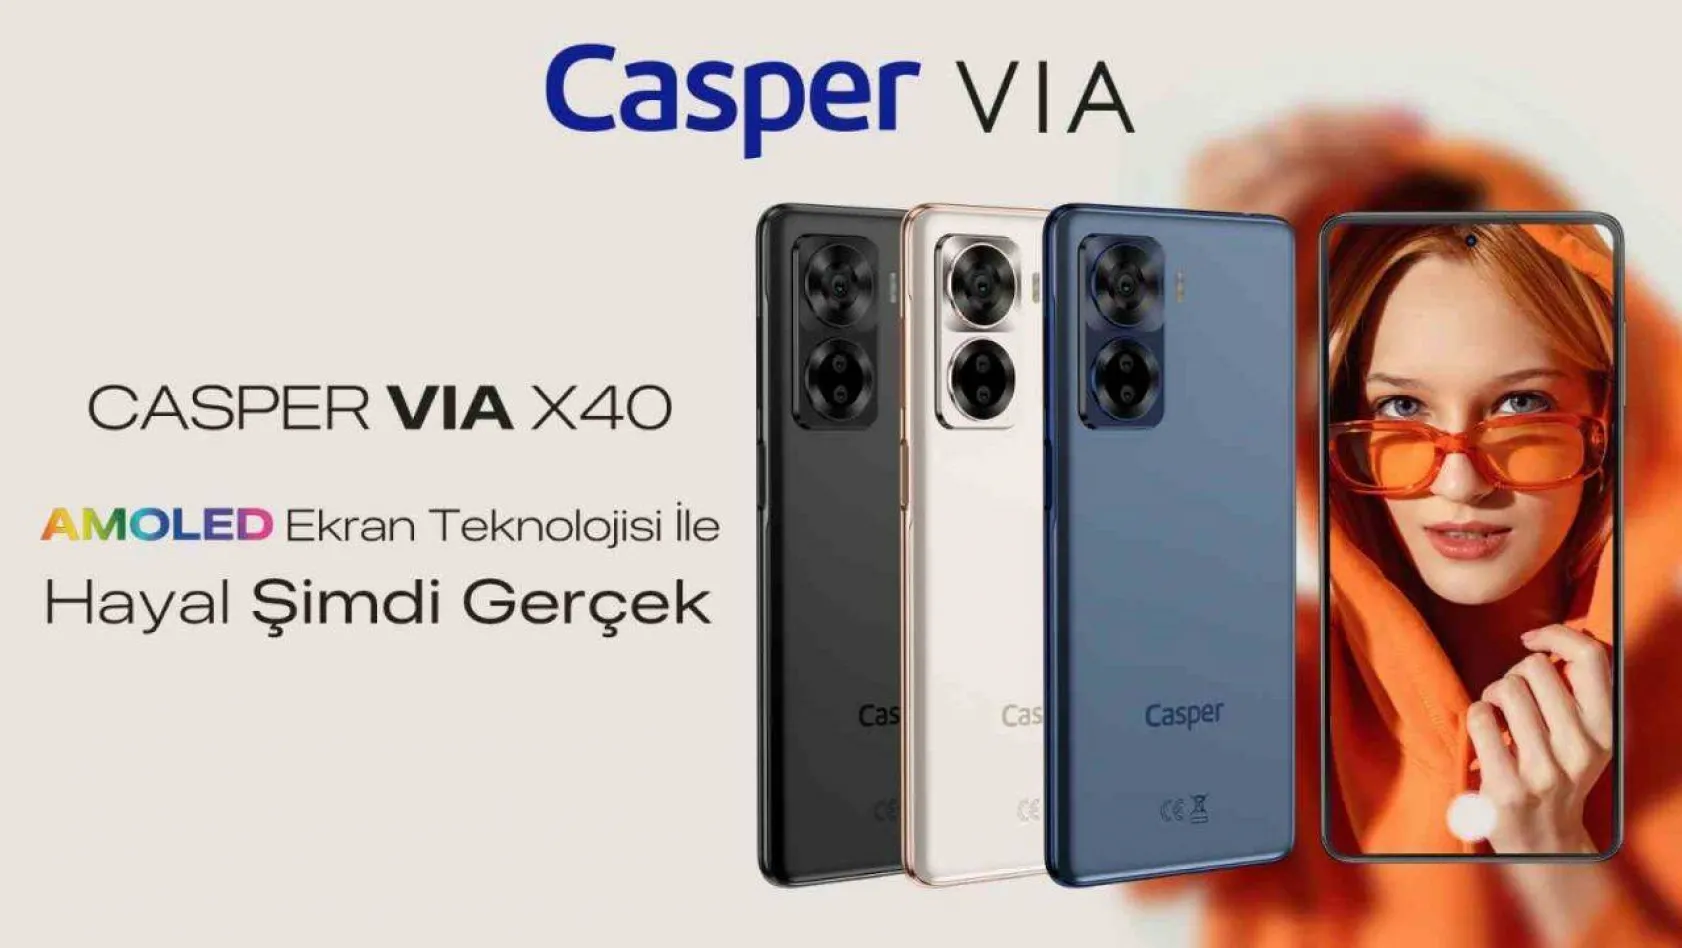 Casper VIA X40'ın kullanıcılarına sağladığı 10 fayda